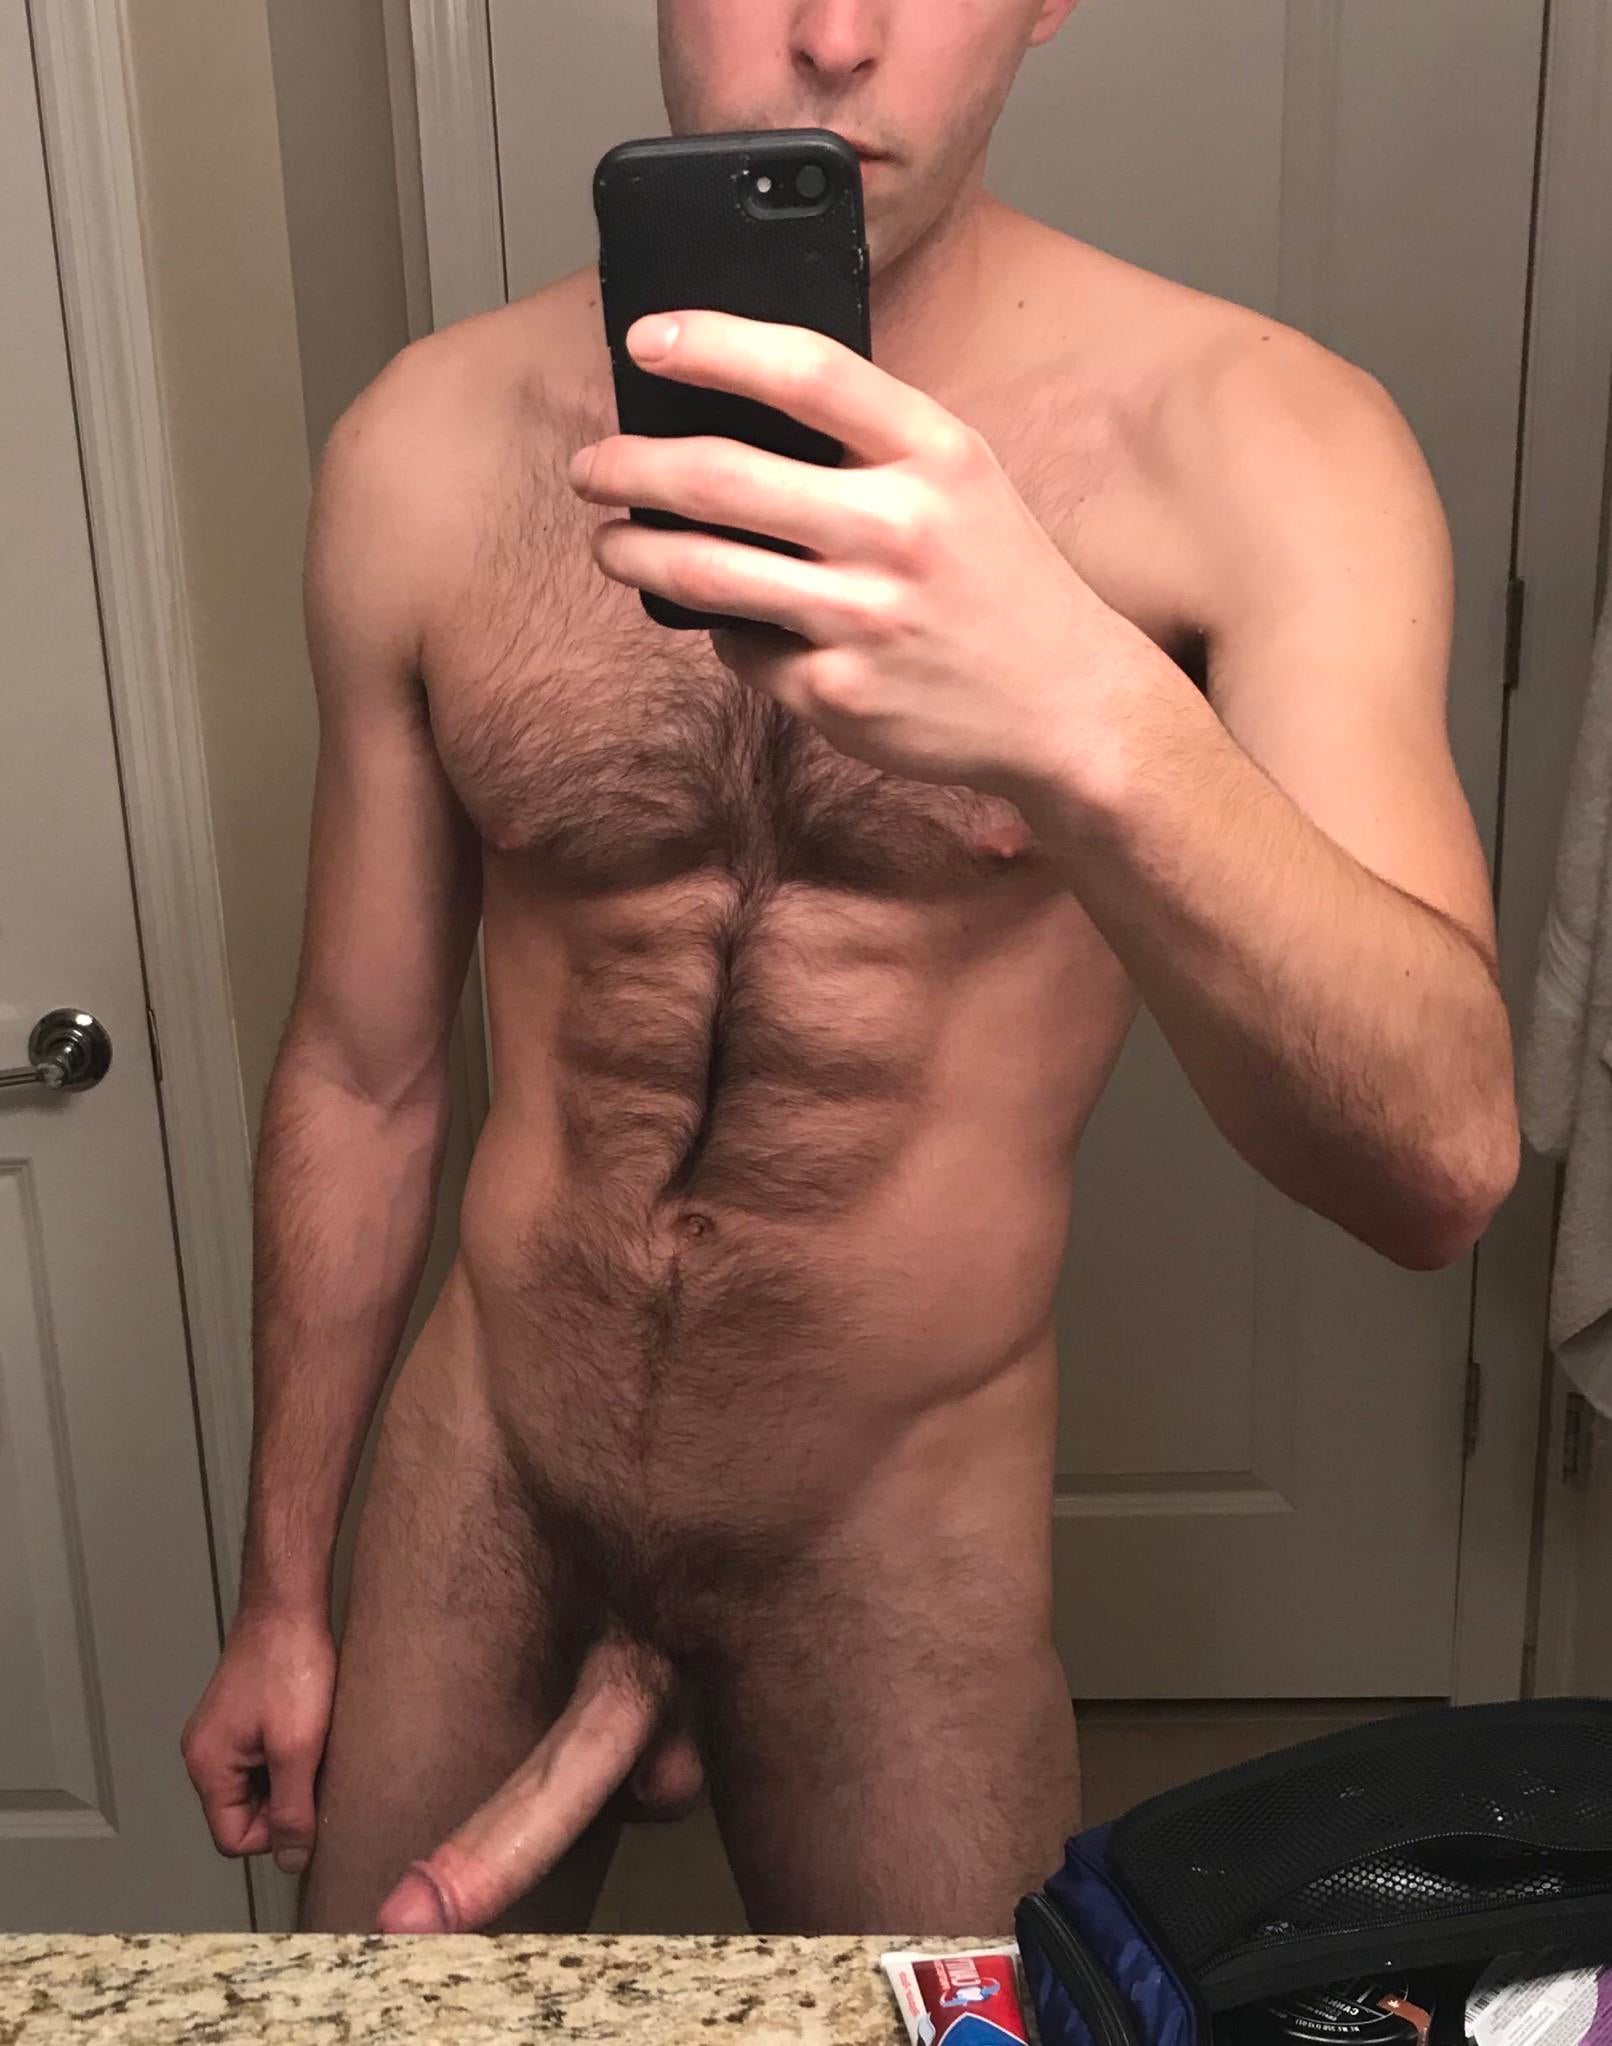 hairy men naked body selfie